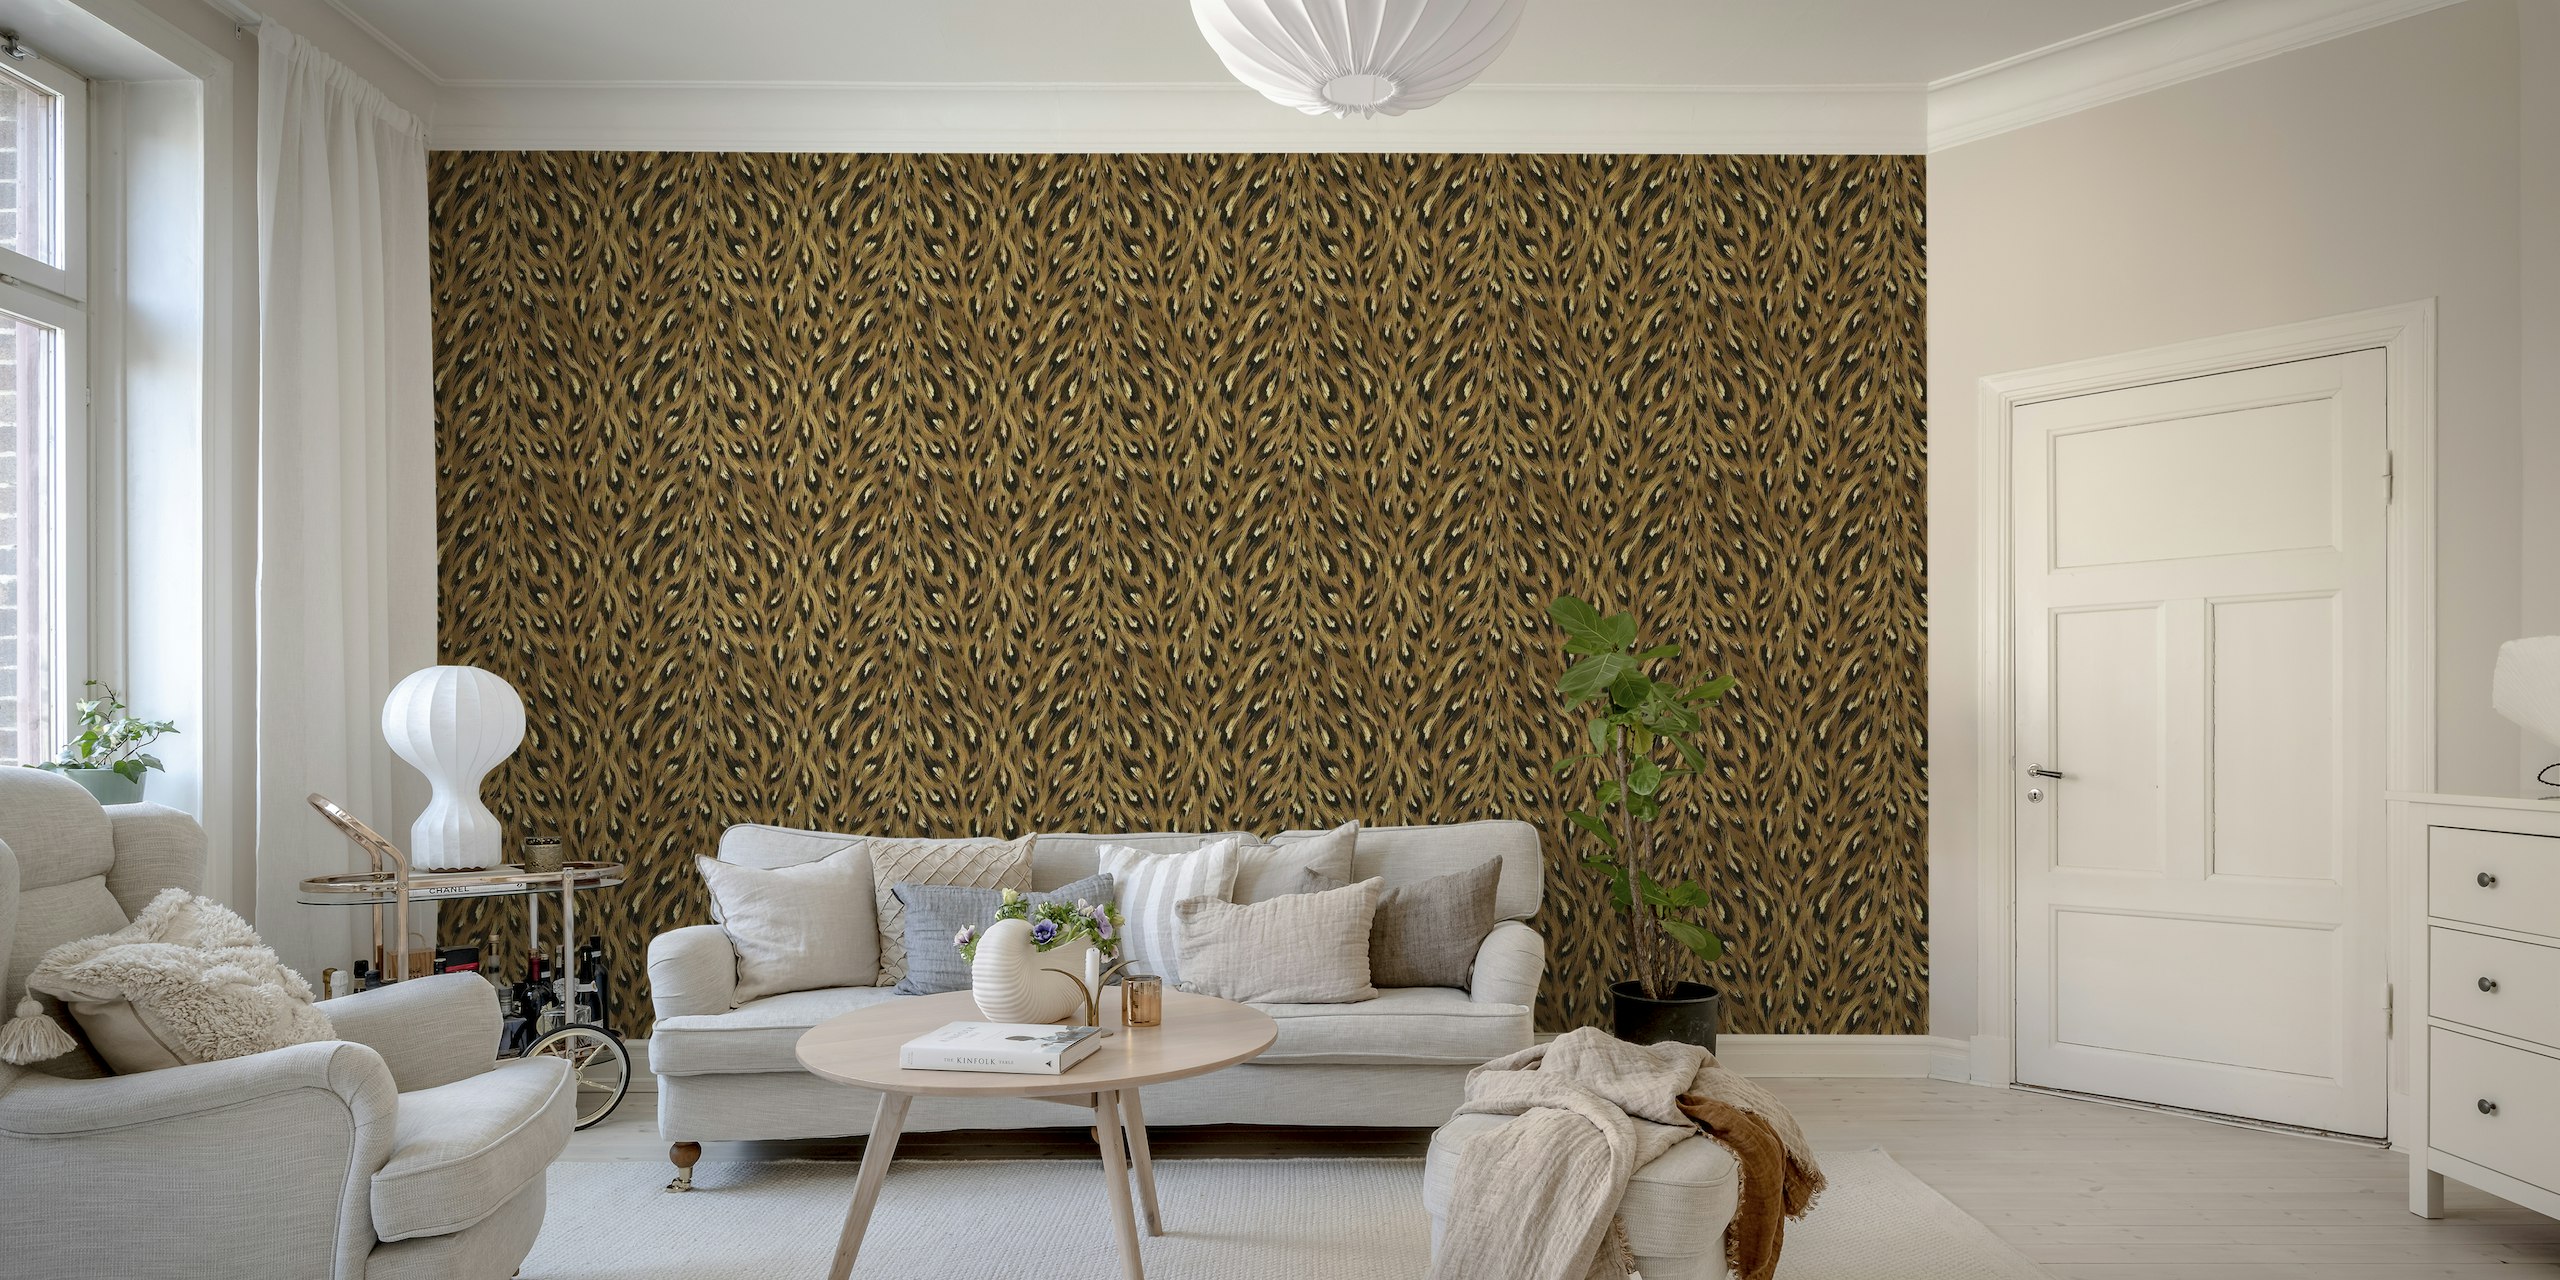 Design nástěnné malby s hnědým leopardím vzorem pro elegantní a stylové interiéry